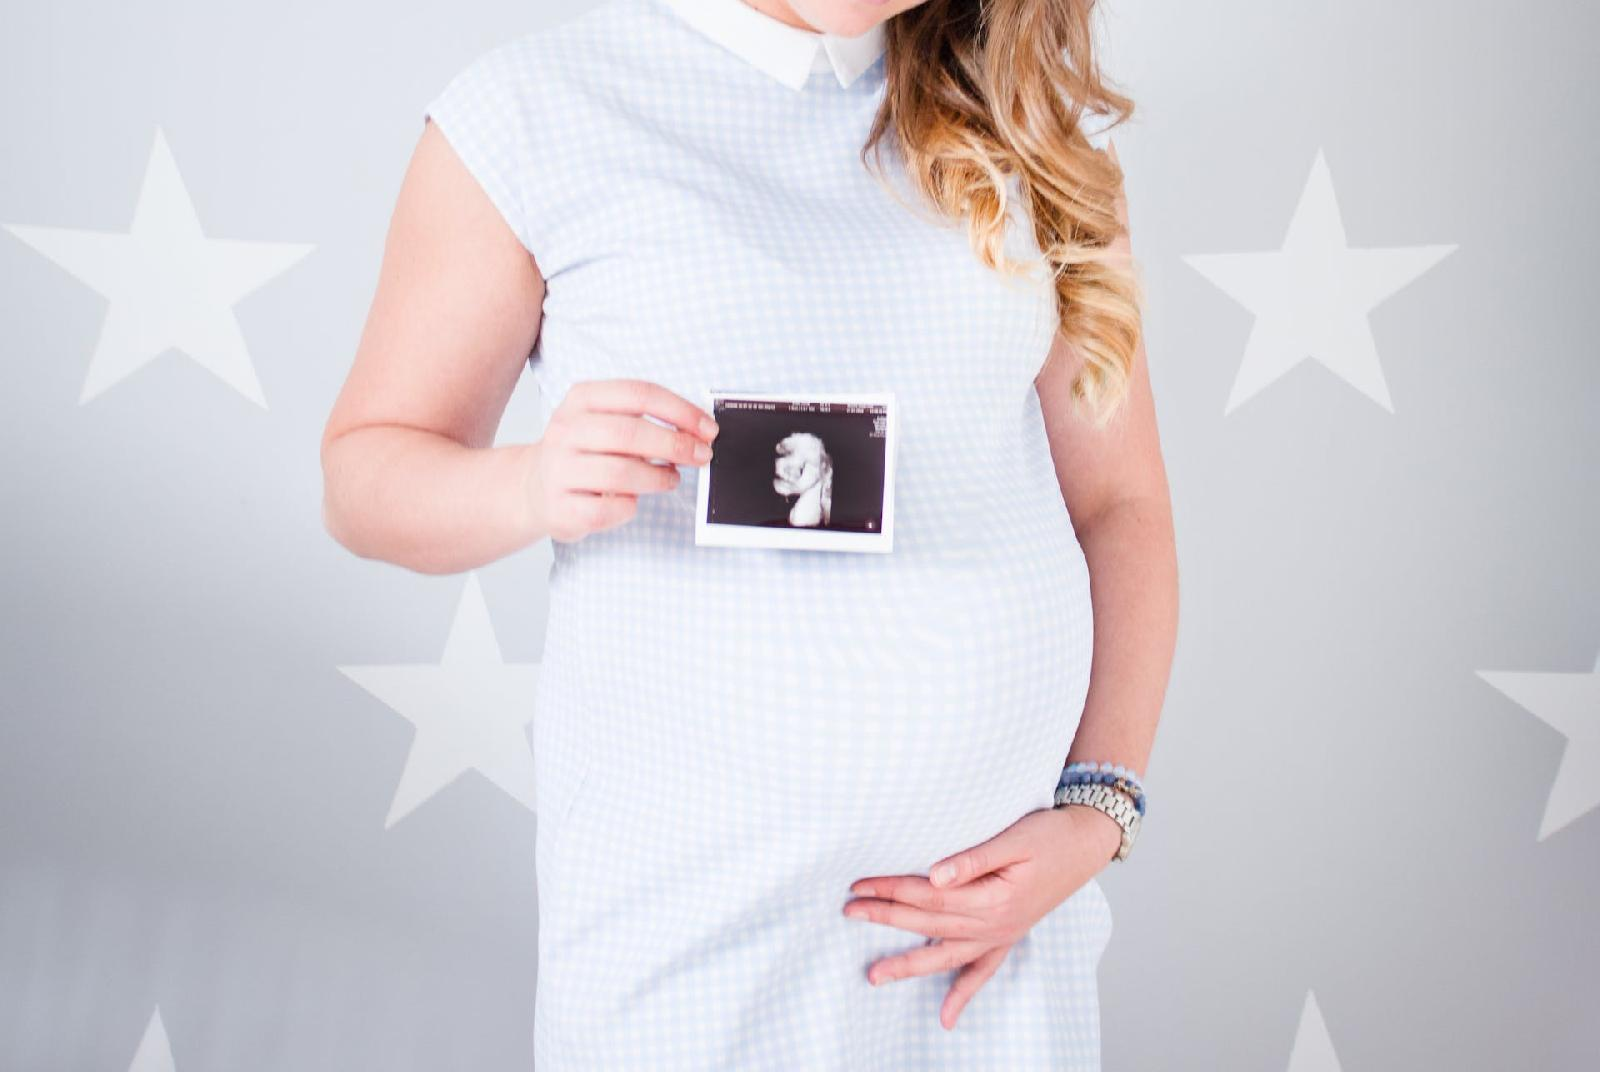 17eme semaine de grossesse : decouvrez les evolutions qui vous attendent